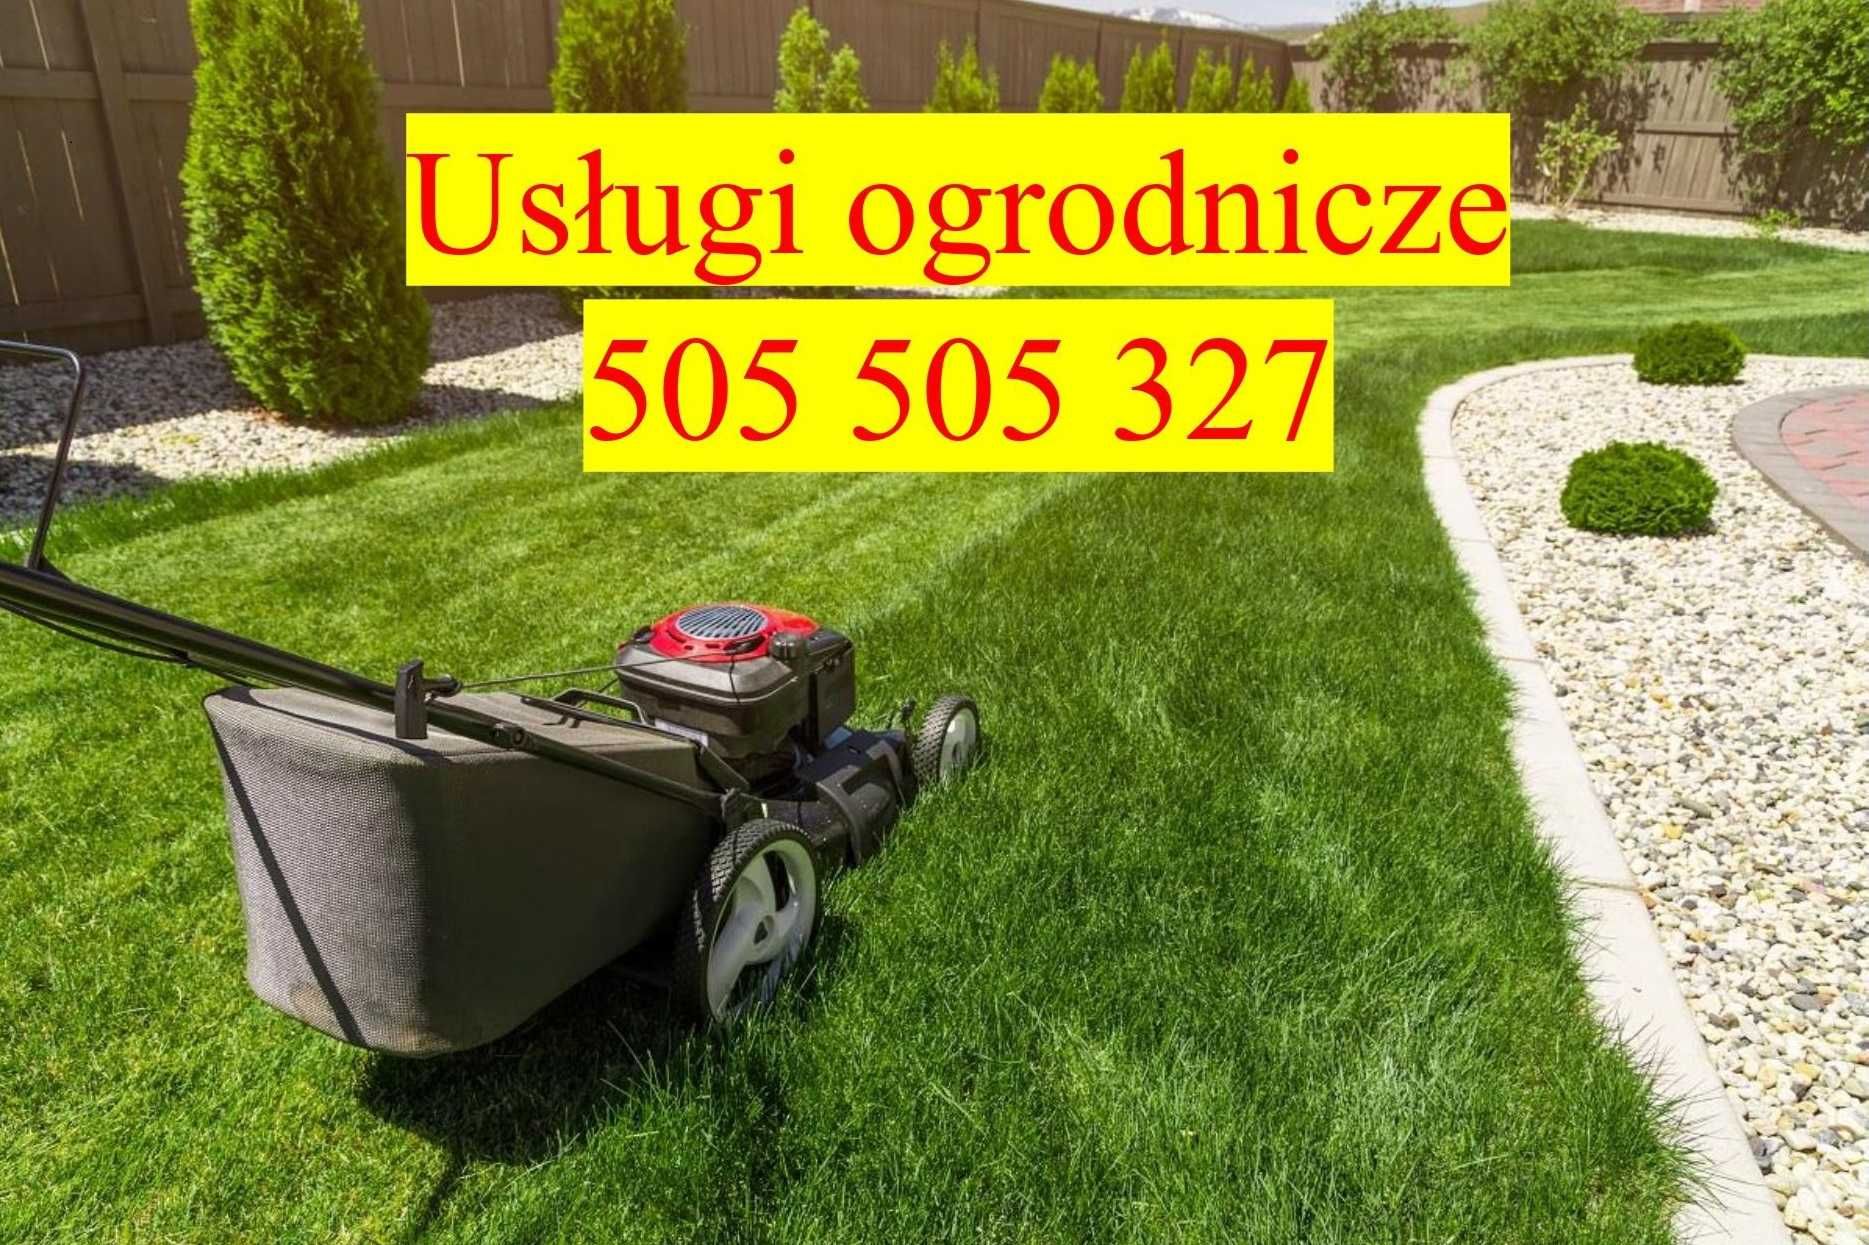 Usługi ogrodnicze, m.in. koszenie trawy, oczyszczanie działek